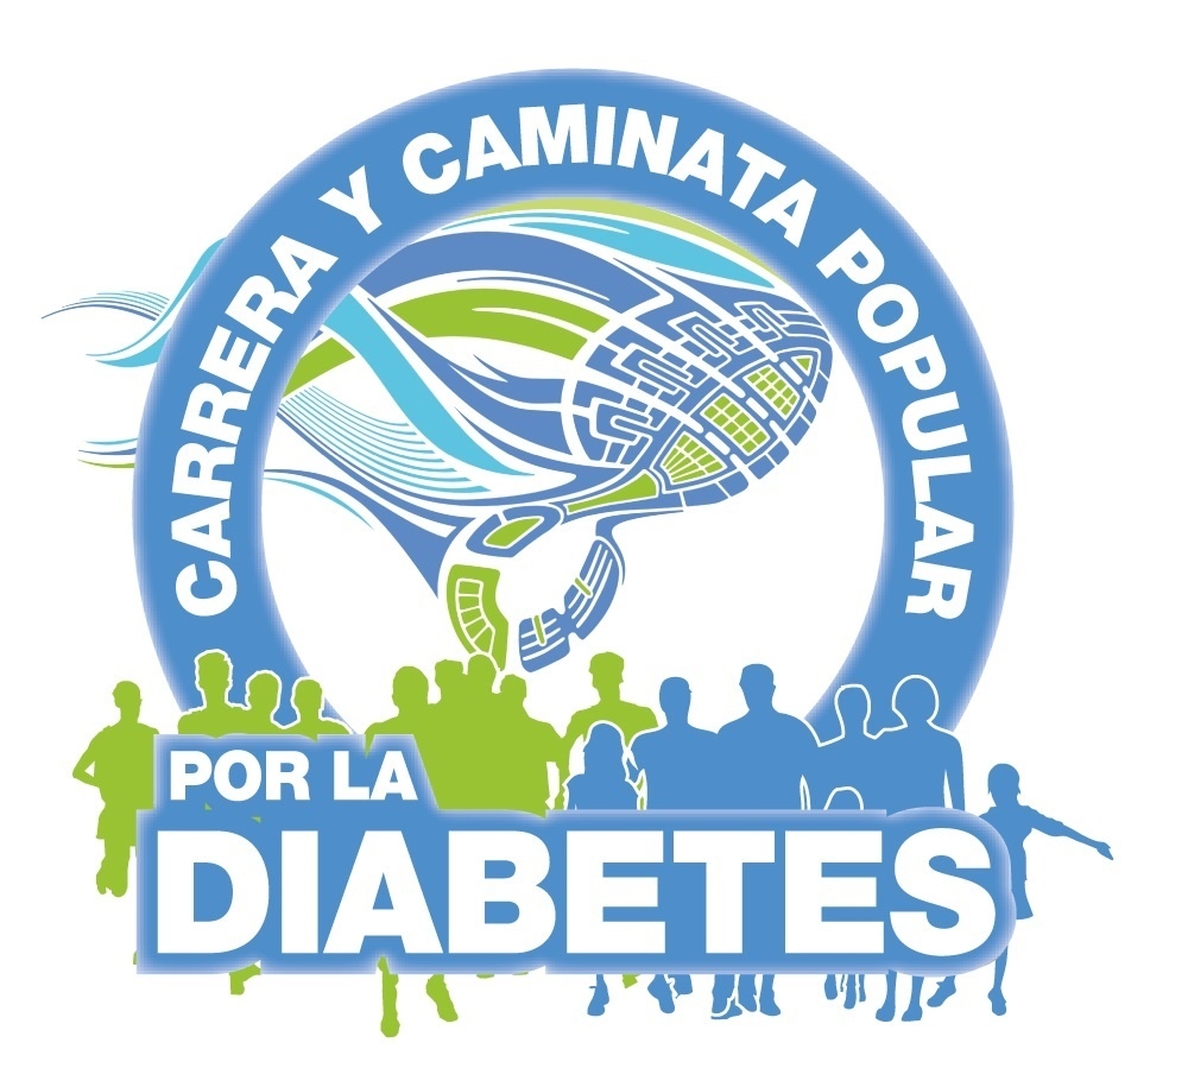 La primera edición de la Carrera y Caminata Popular por la Diabetes tendrá lugar en Valencia